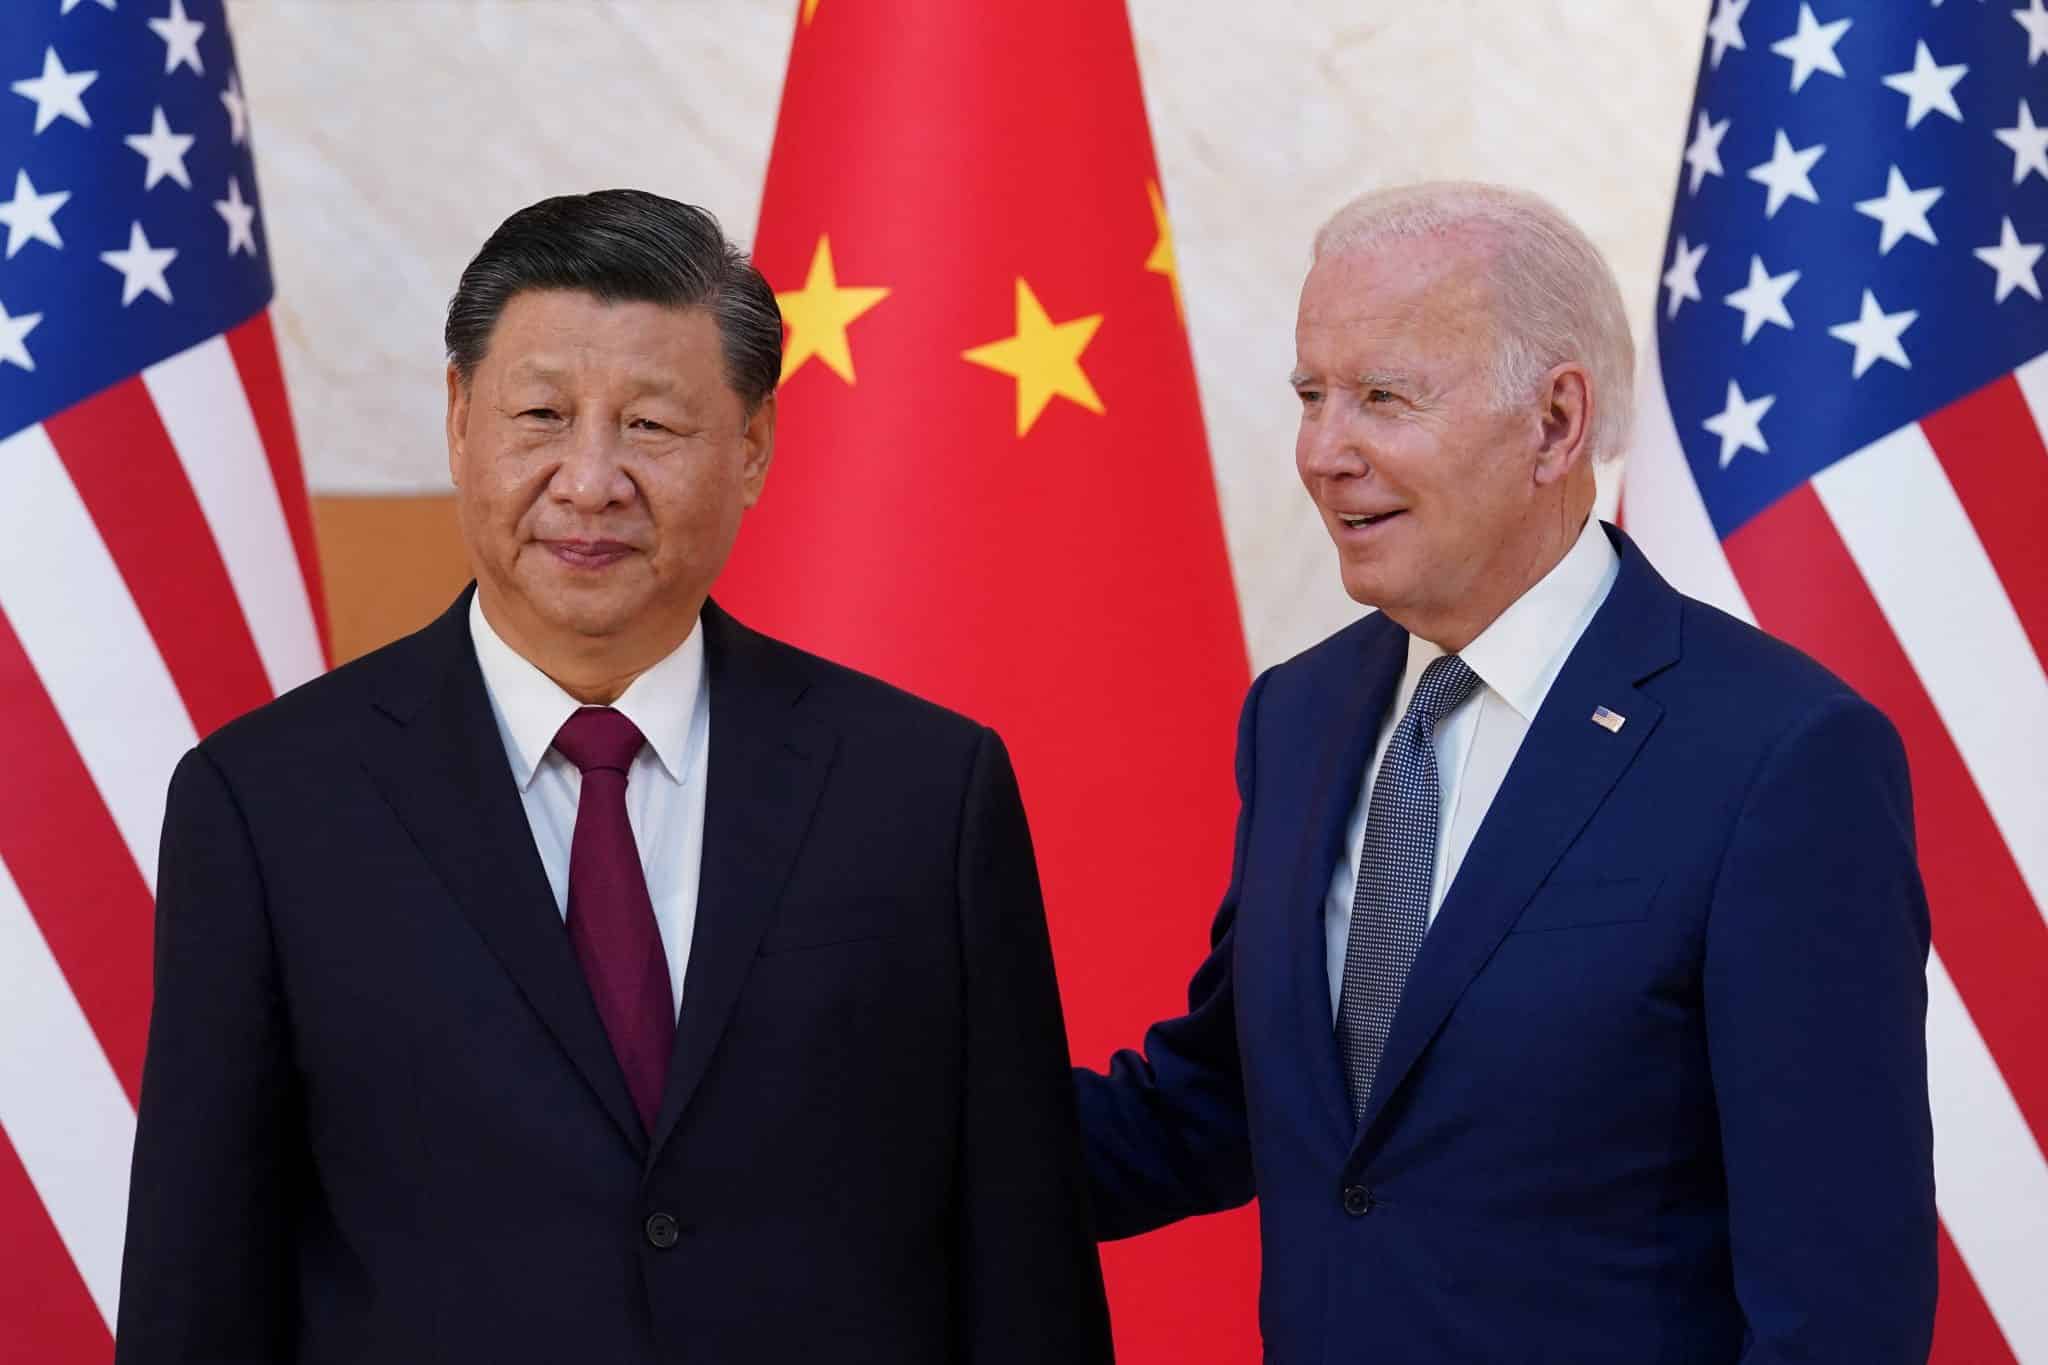 فورين بوليسي: الولايات المتحدة تربح ضد الصين في قارة أوقيانوسيا